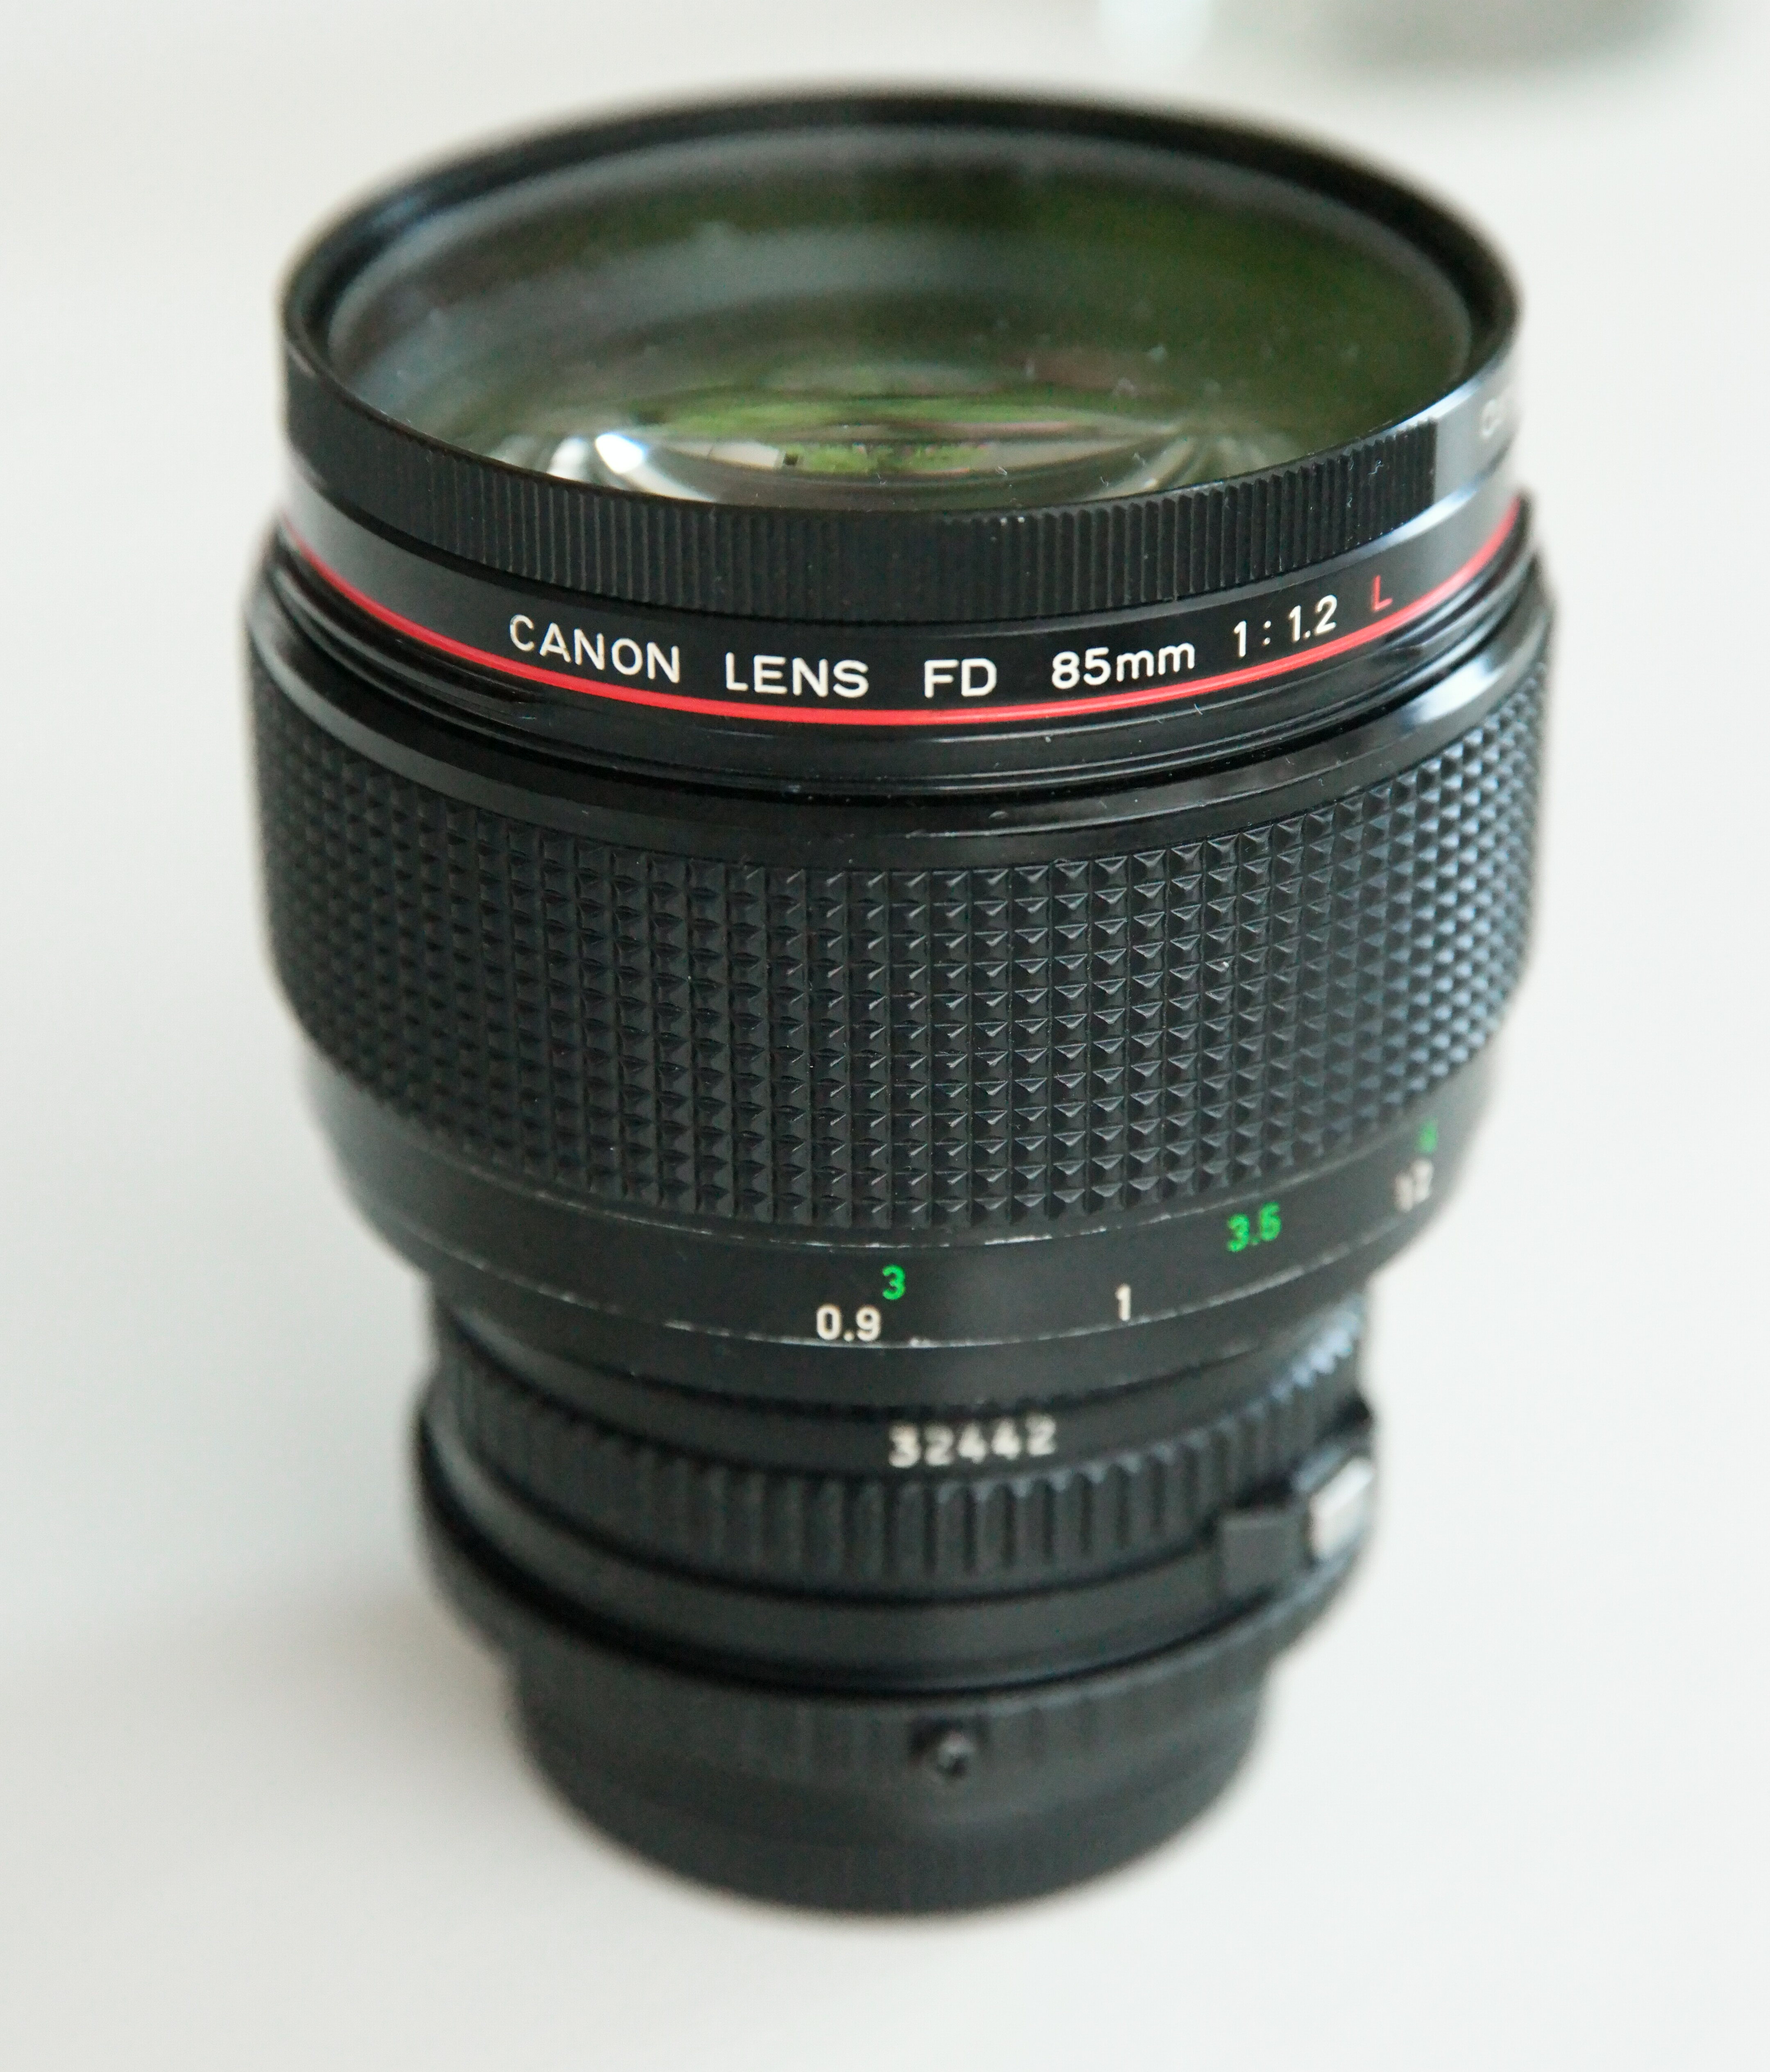 Manual focus short telephoto prime lens for Canon FD full-frame system.